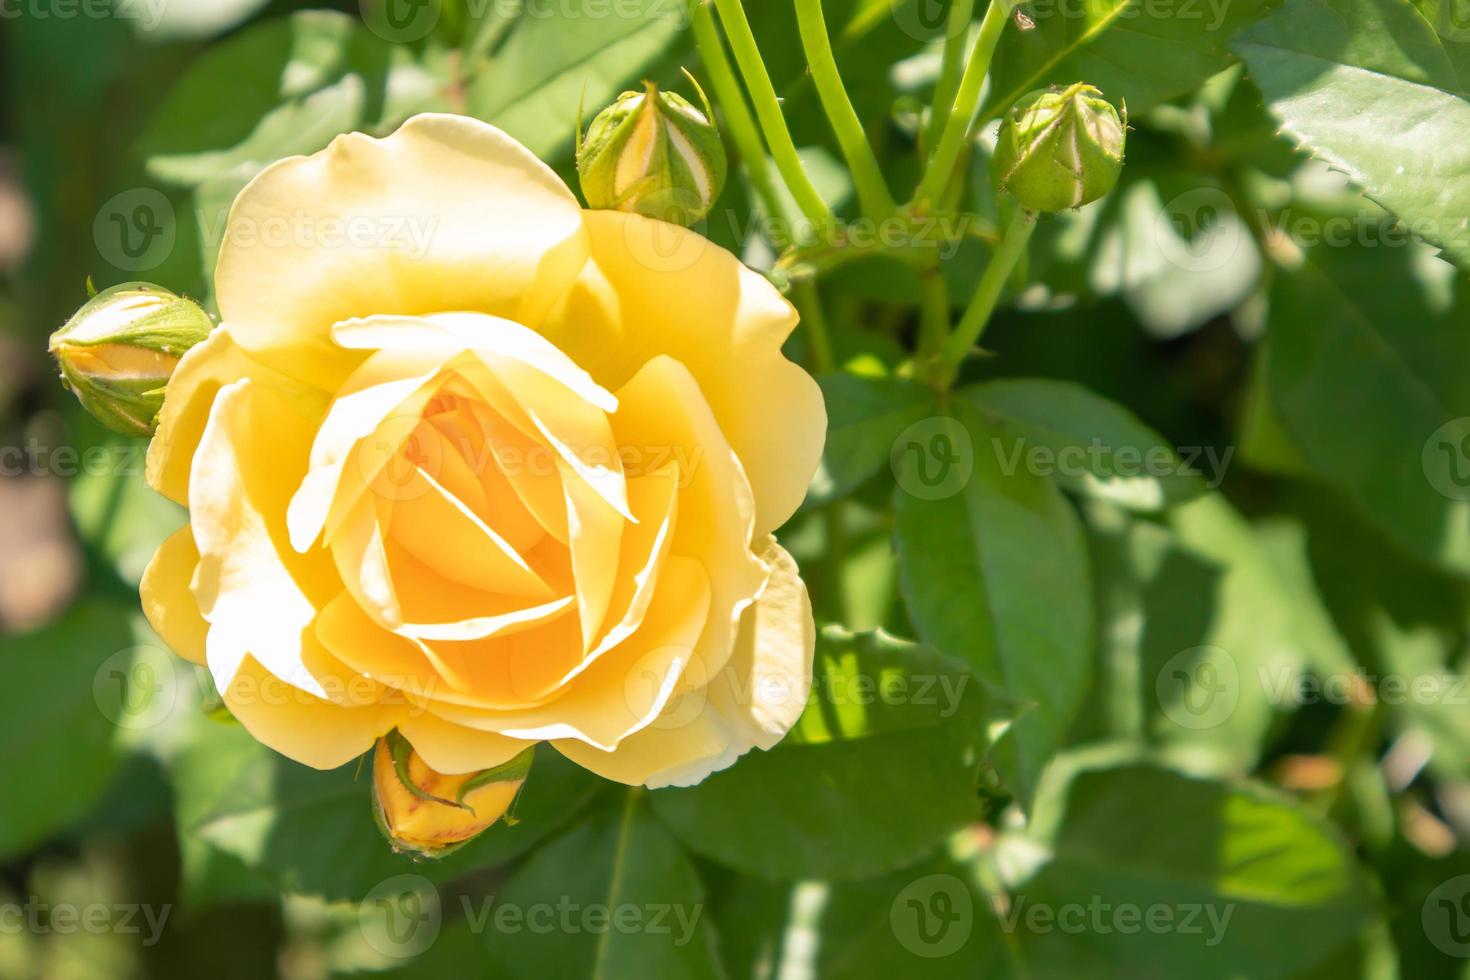 mooie, kleurrijke, delicate bloeiende rozen in een gele tuin. selectieve aandacht. detailopname. foto